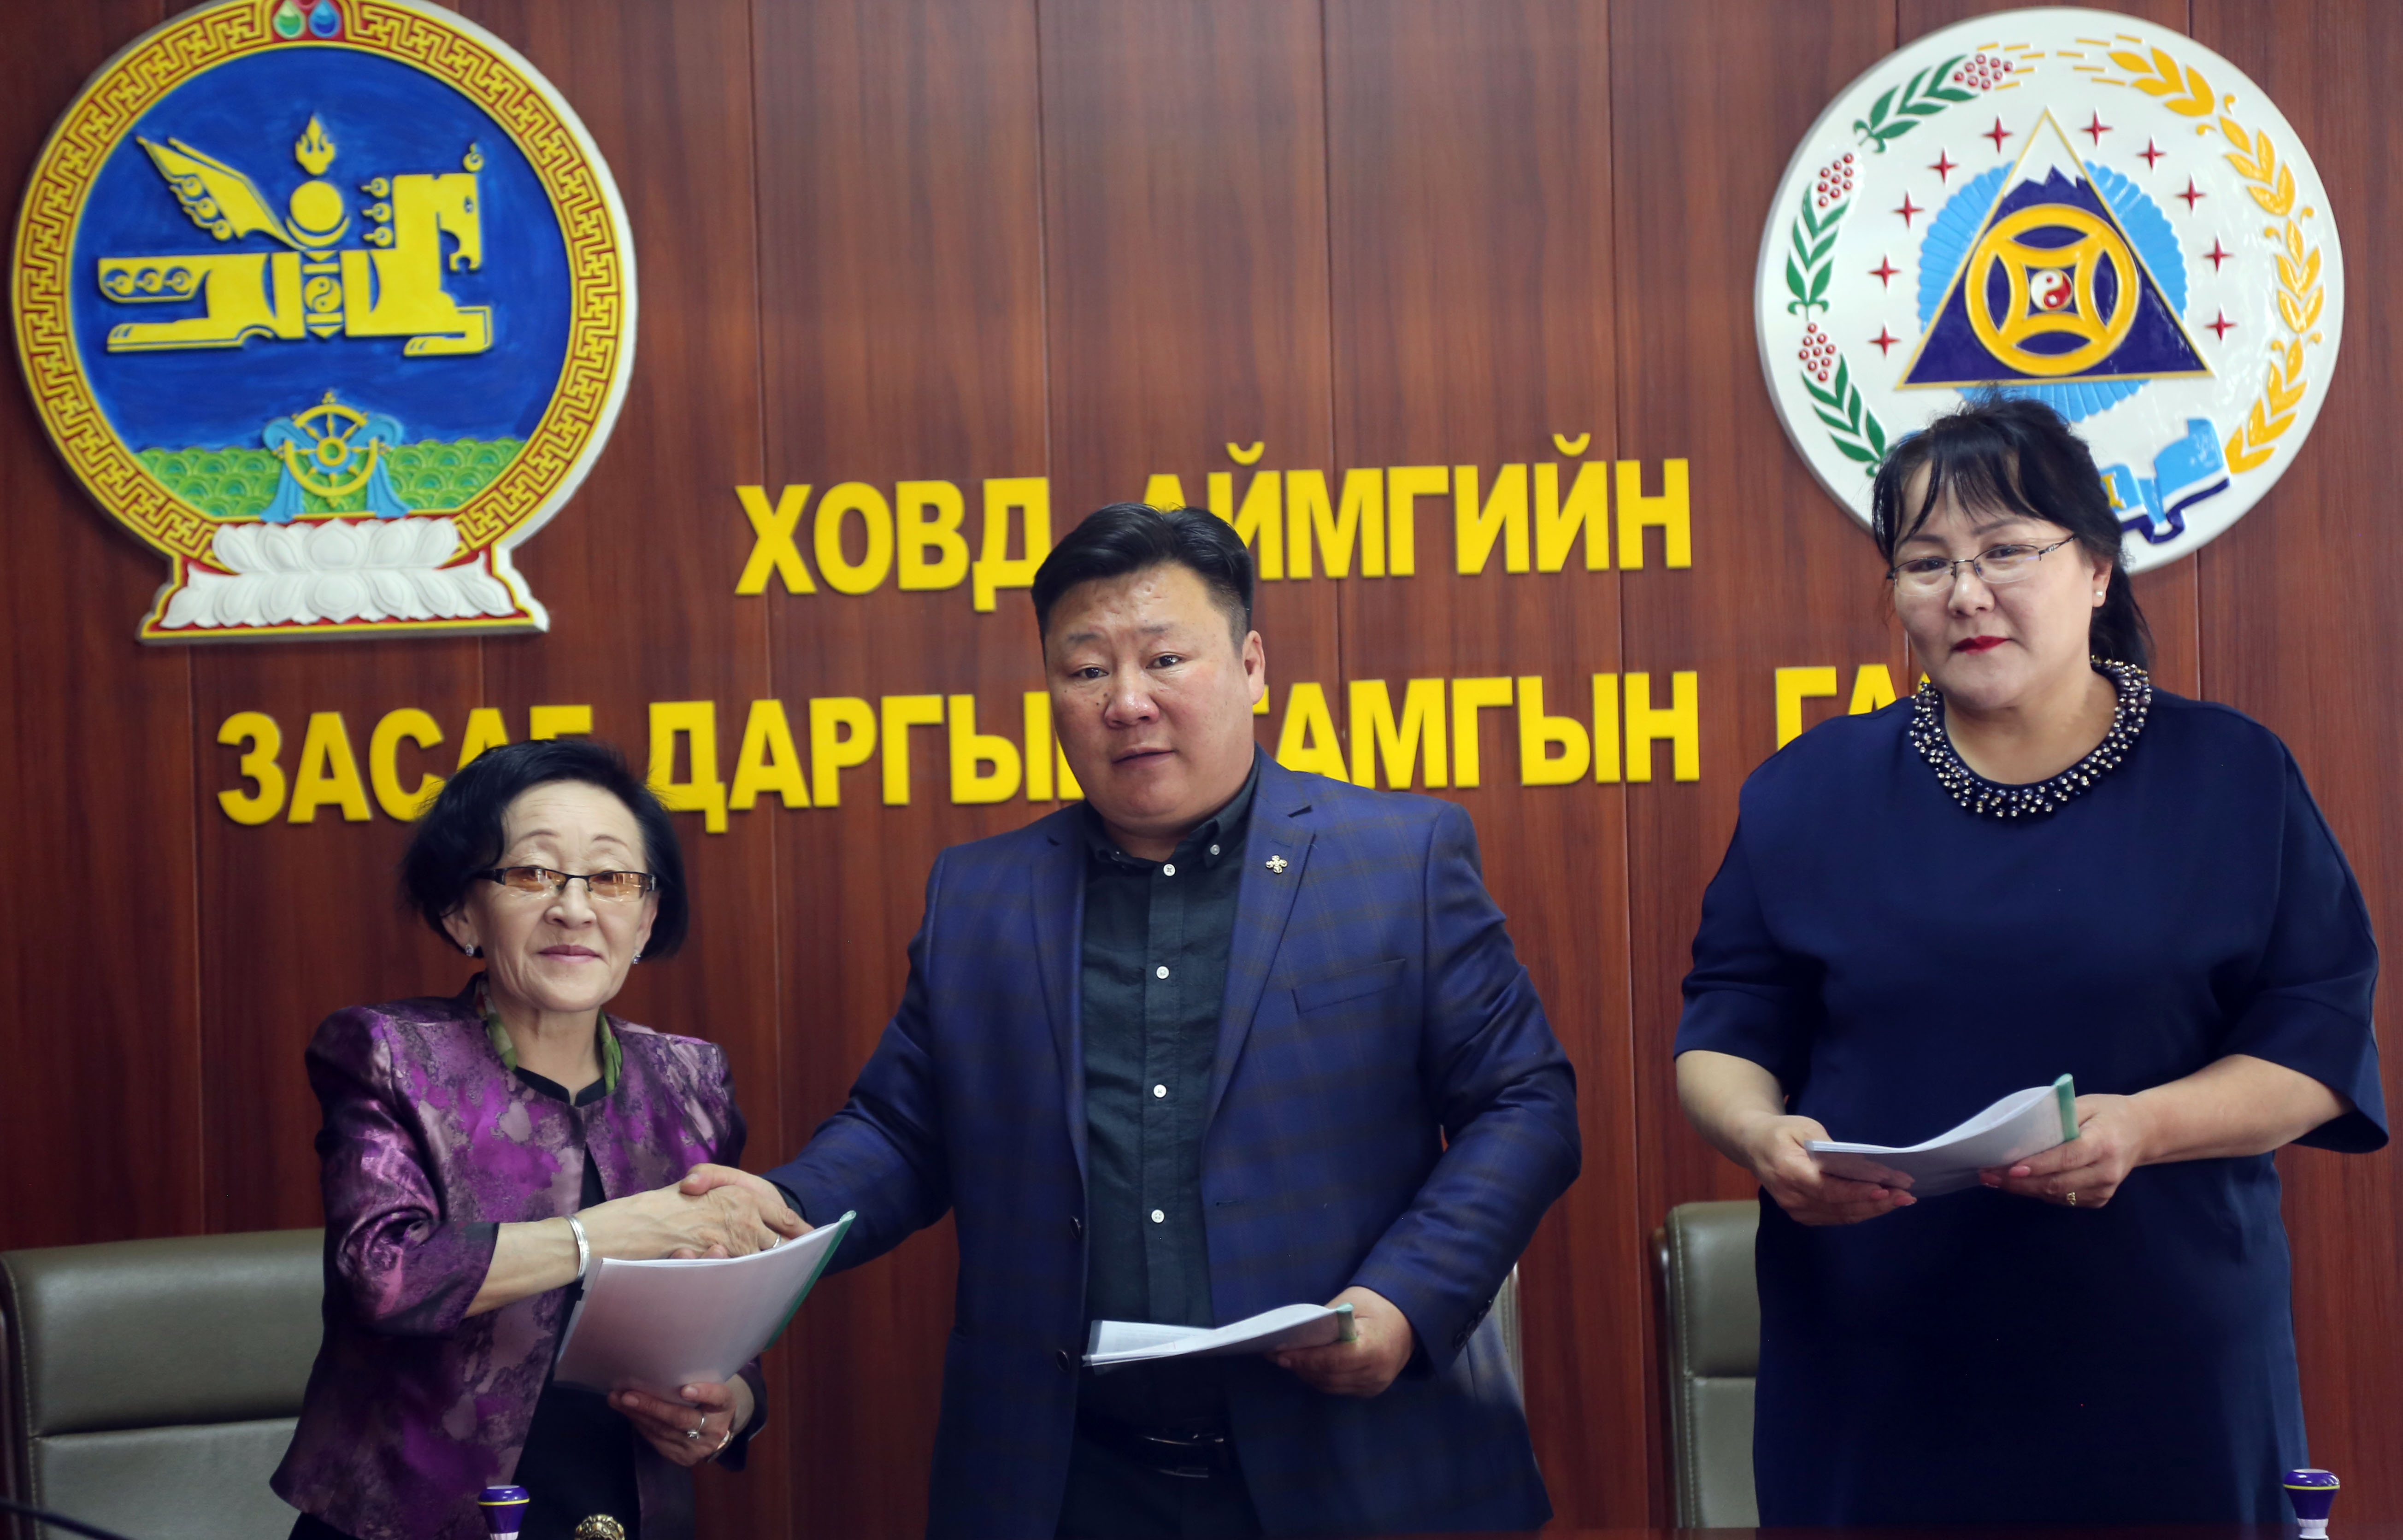 Монгол Улсын Эрүүл мэндийн тухай хуульд “Өрхийн эрүүл мэндийн төв